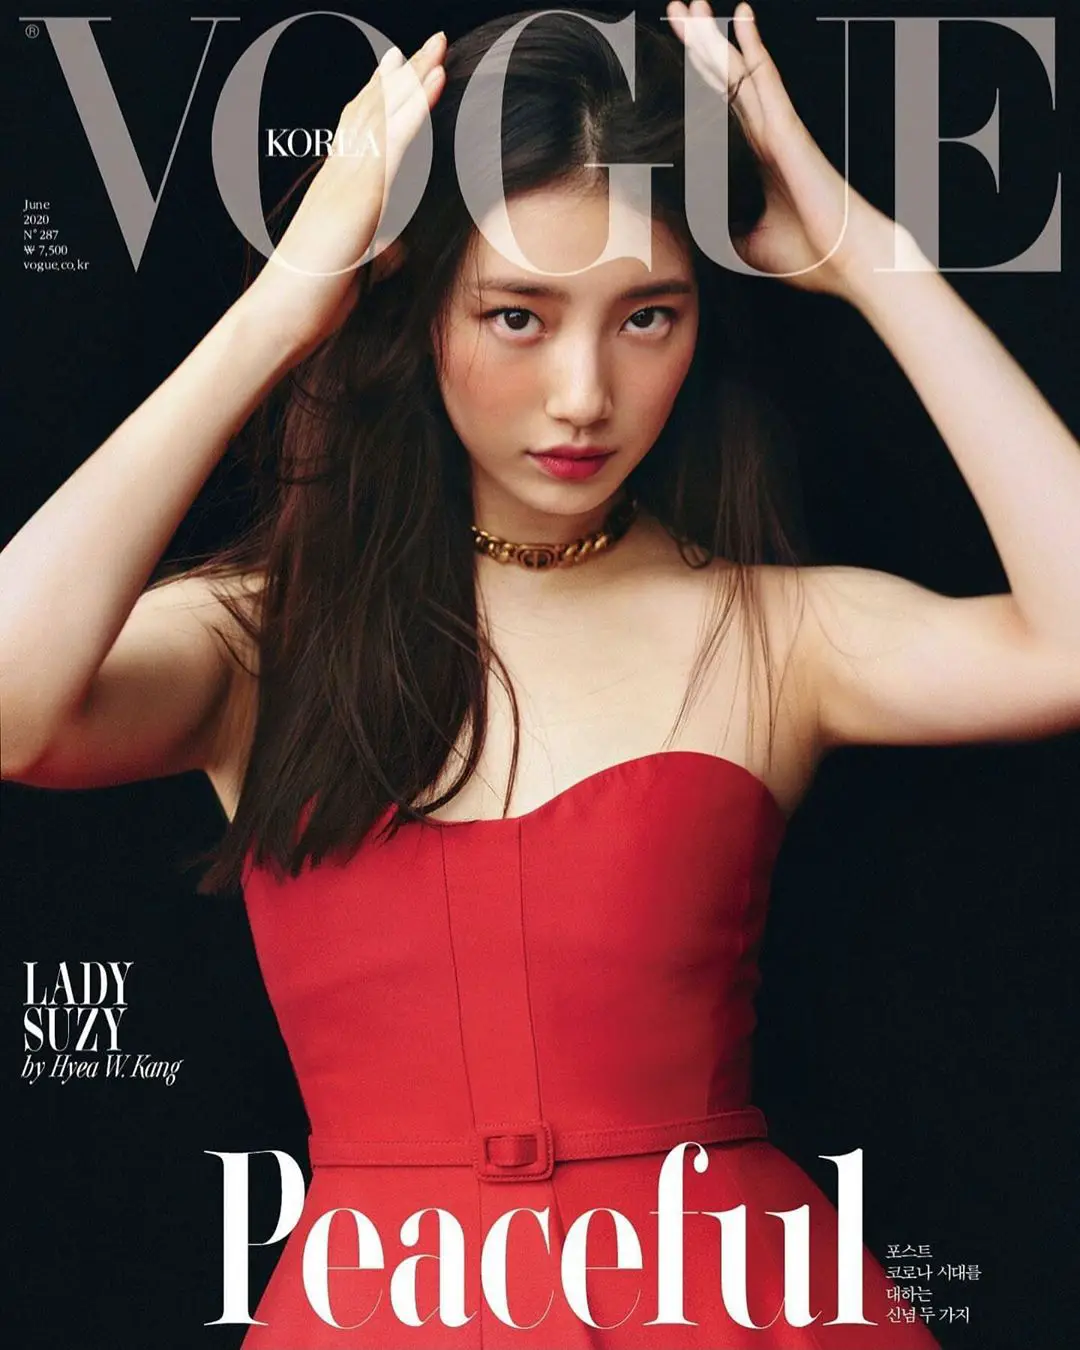 SUZY pose en couverture de VOGUE Korea  K GEN